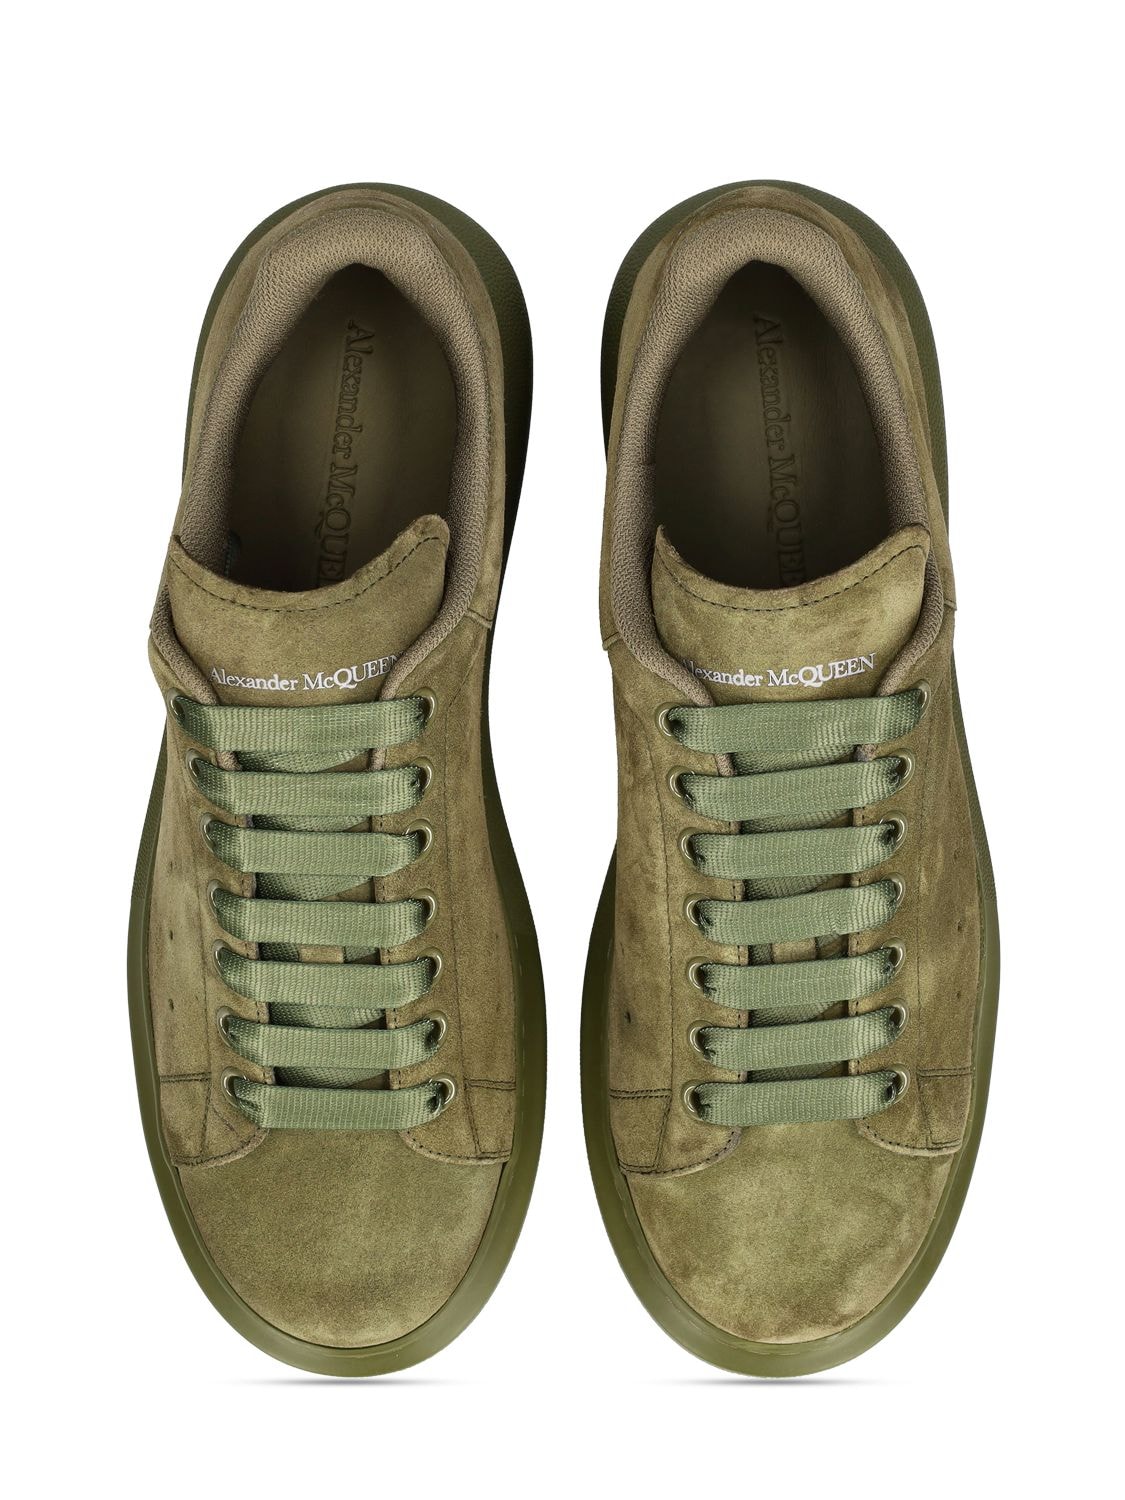 Shop Alexander Mcqueen Oversized Trainer Suede Sneakers In Military Green